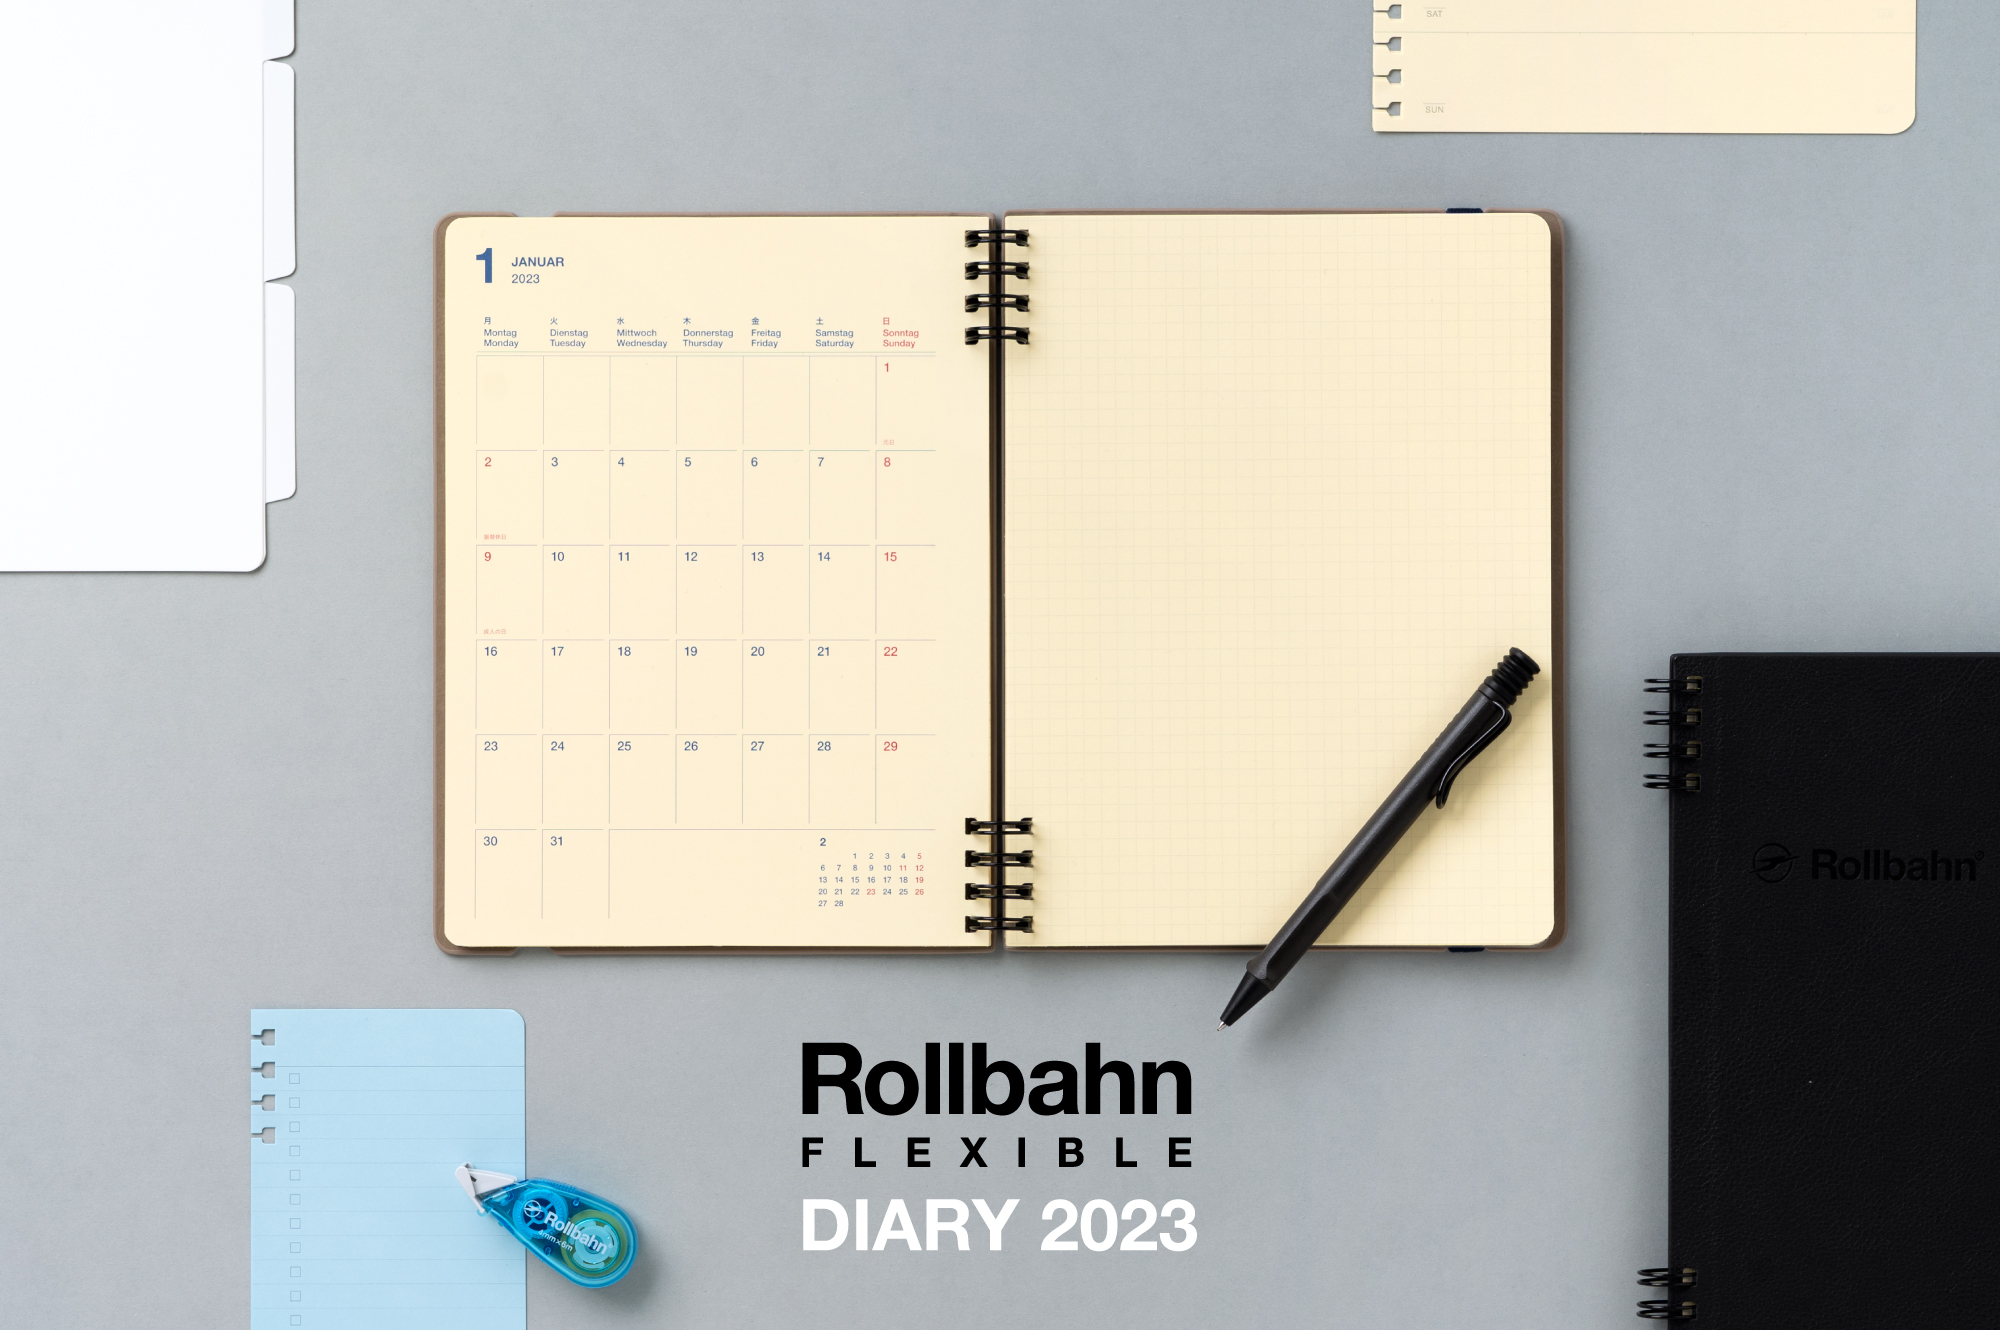 Rollbahn FLEXIBLE Diary